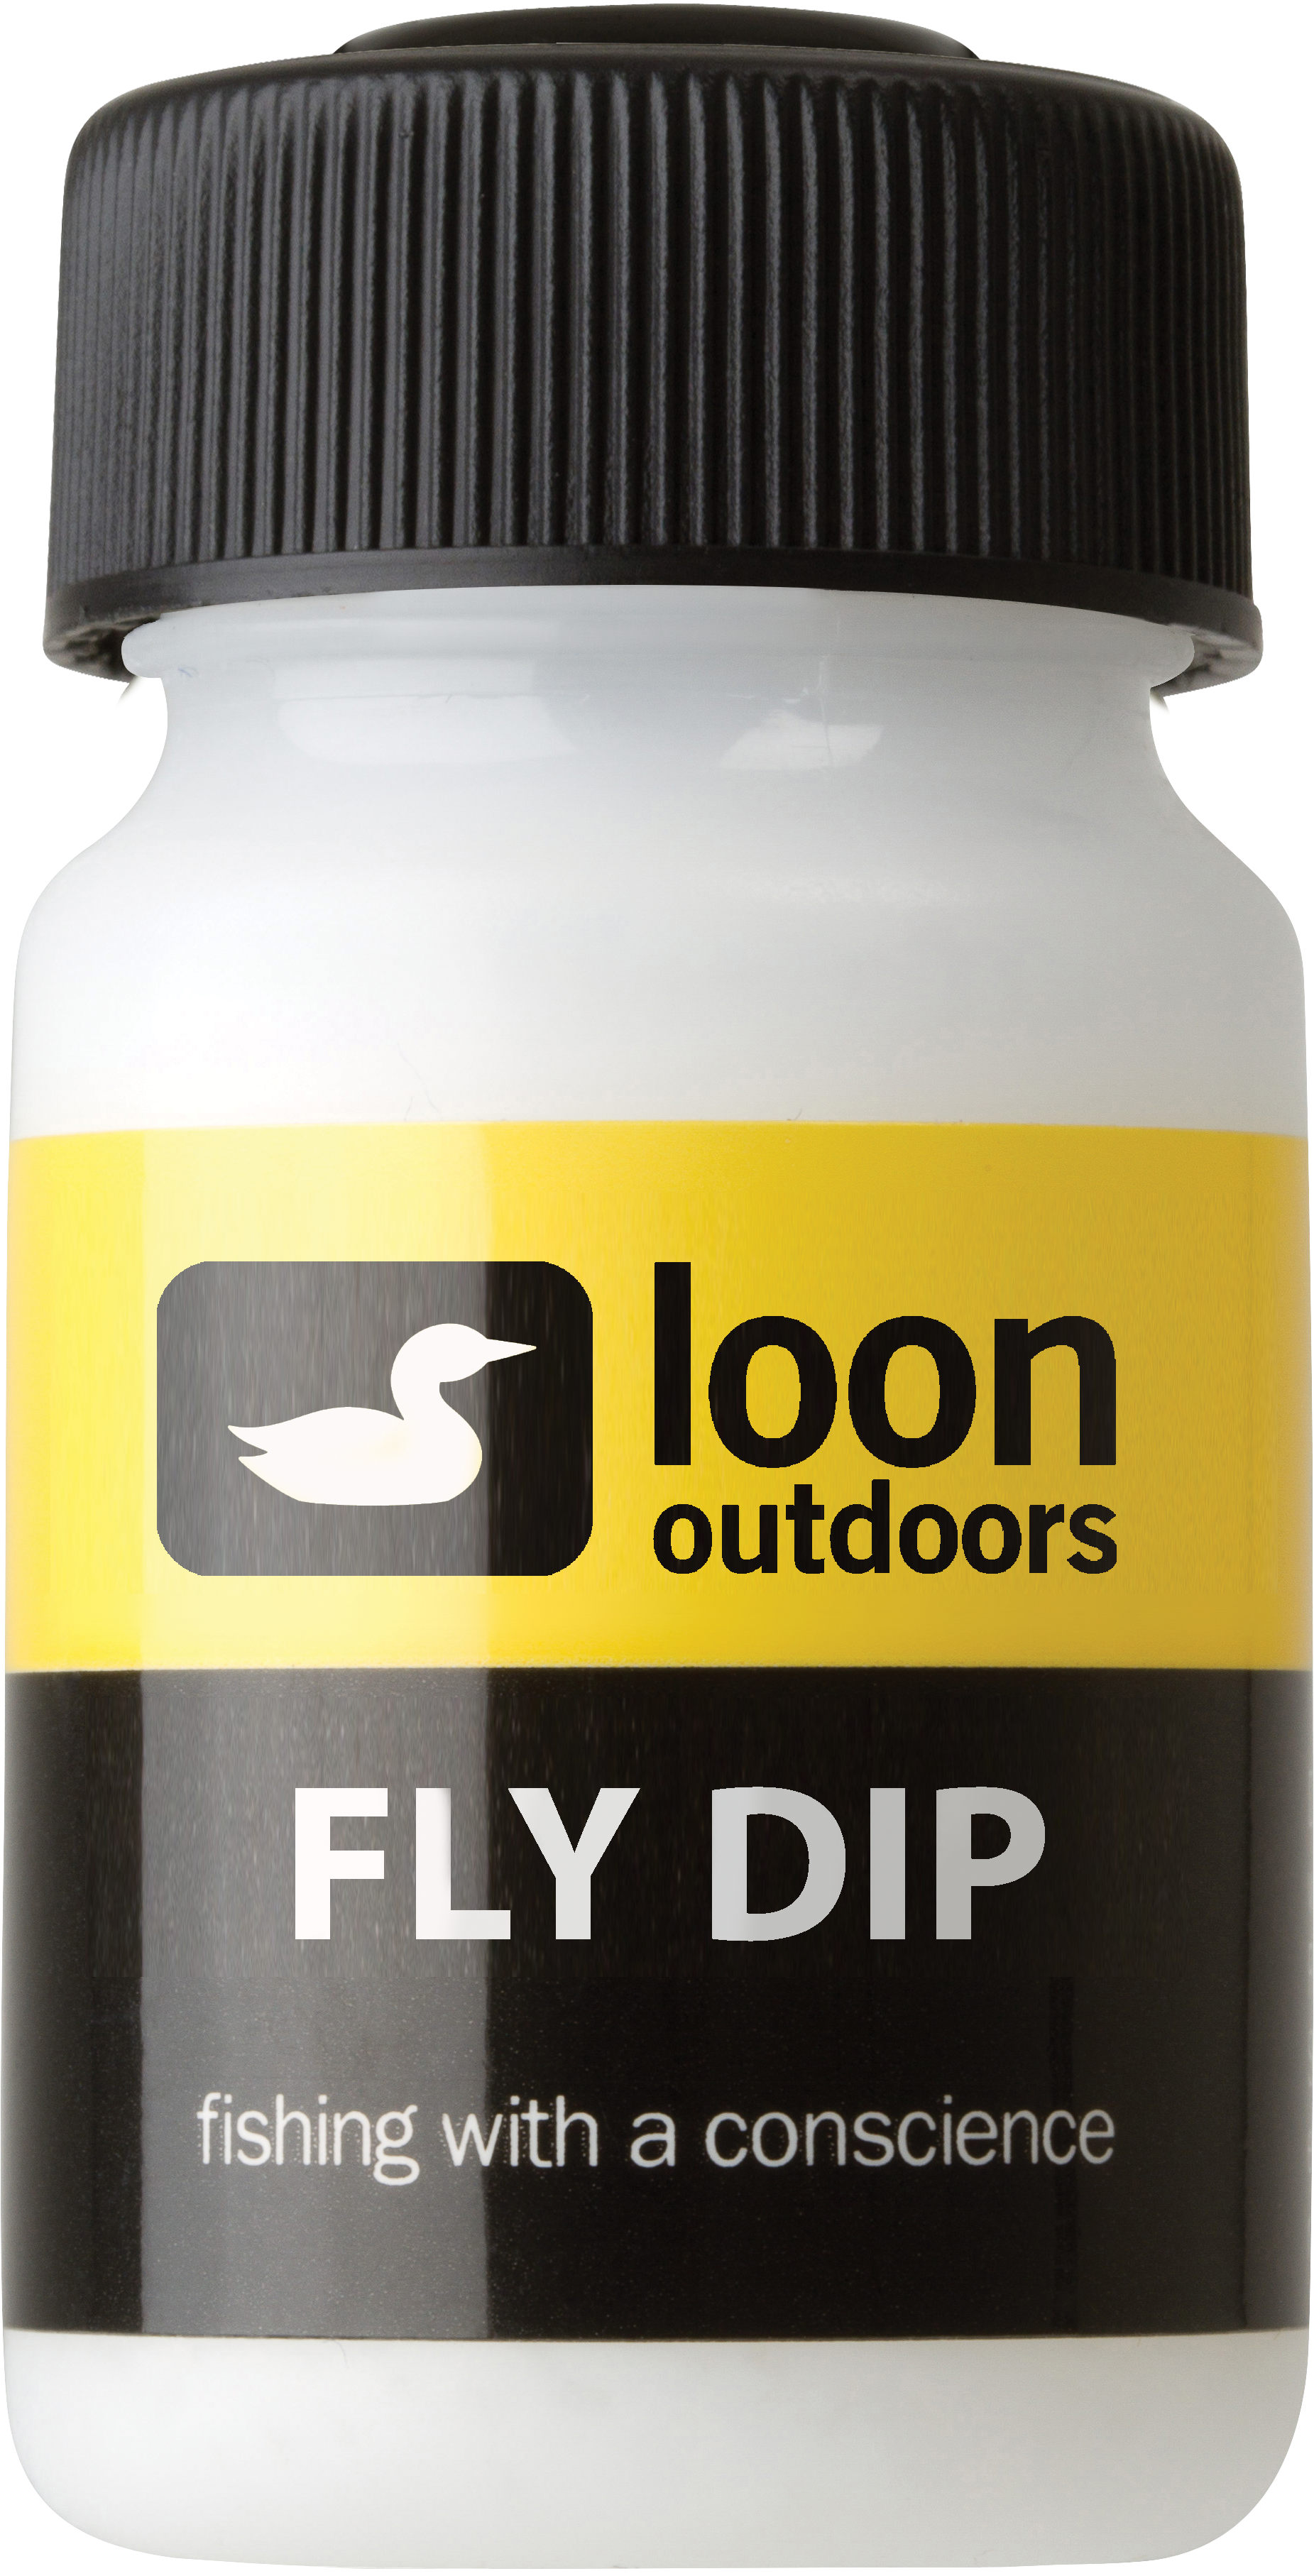 https://www.czechnymph.com/data/web/eshop/loon-outdoors/floatants/loon-floatants-fly-dip.jpg